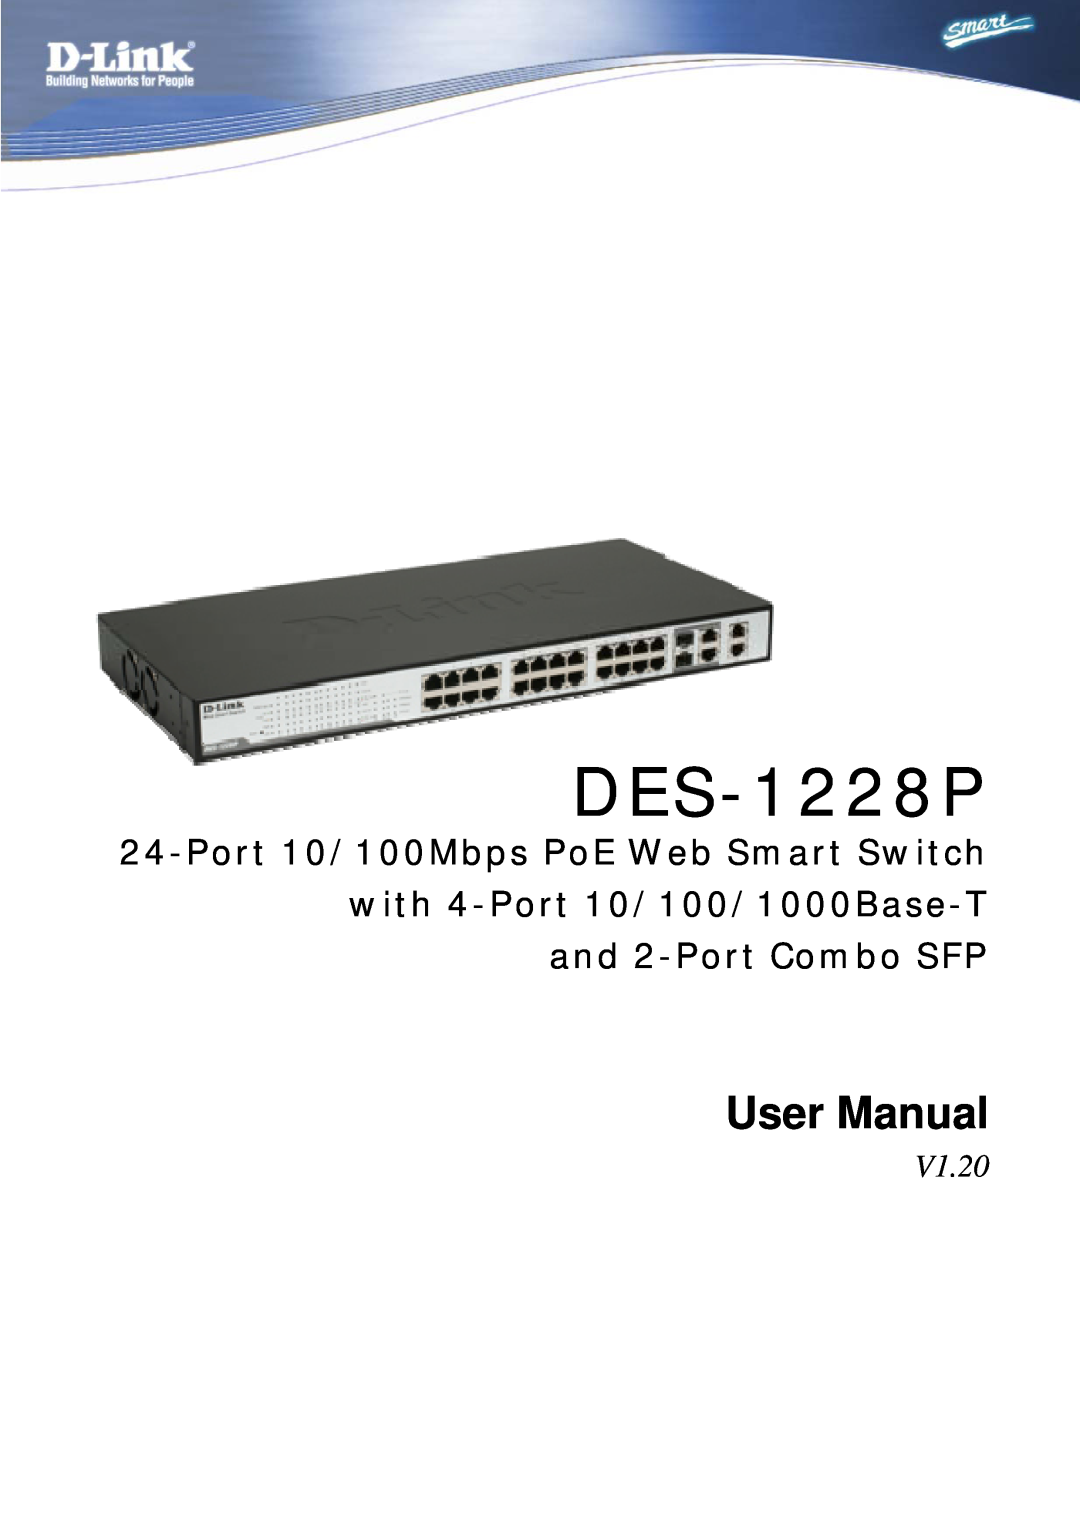 D-Link DES-1228P user manual V1.20, User Manual 